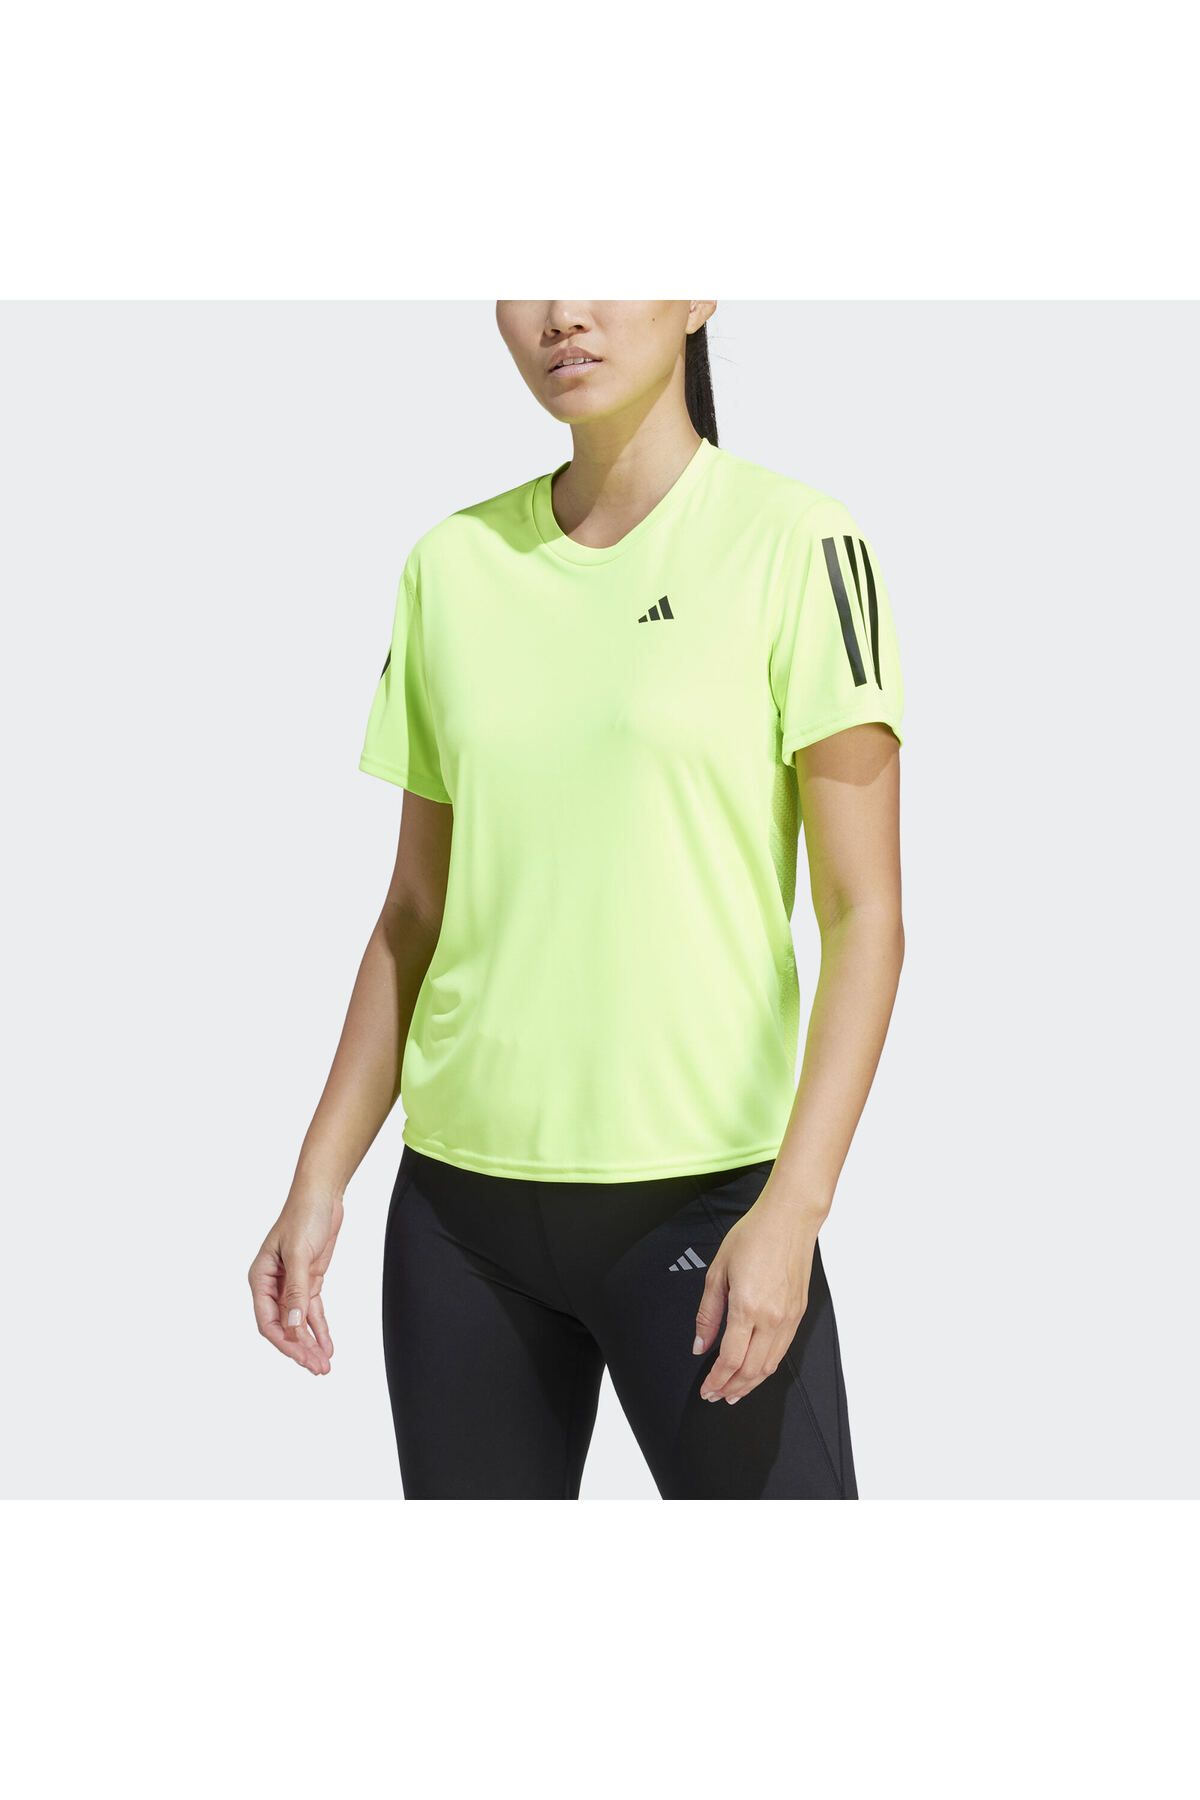 adidas Own The Run Tişört Kadın / Kız Il4133